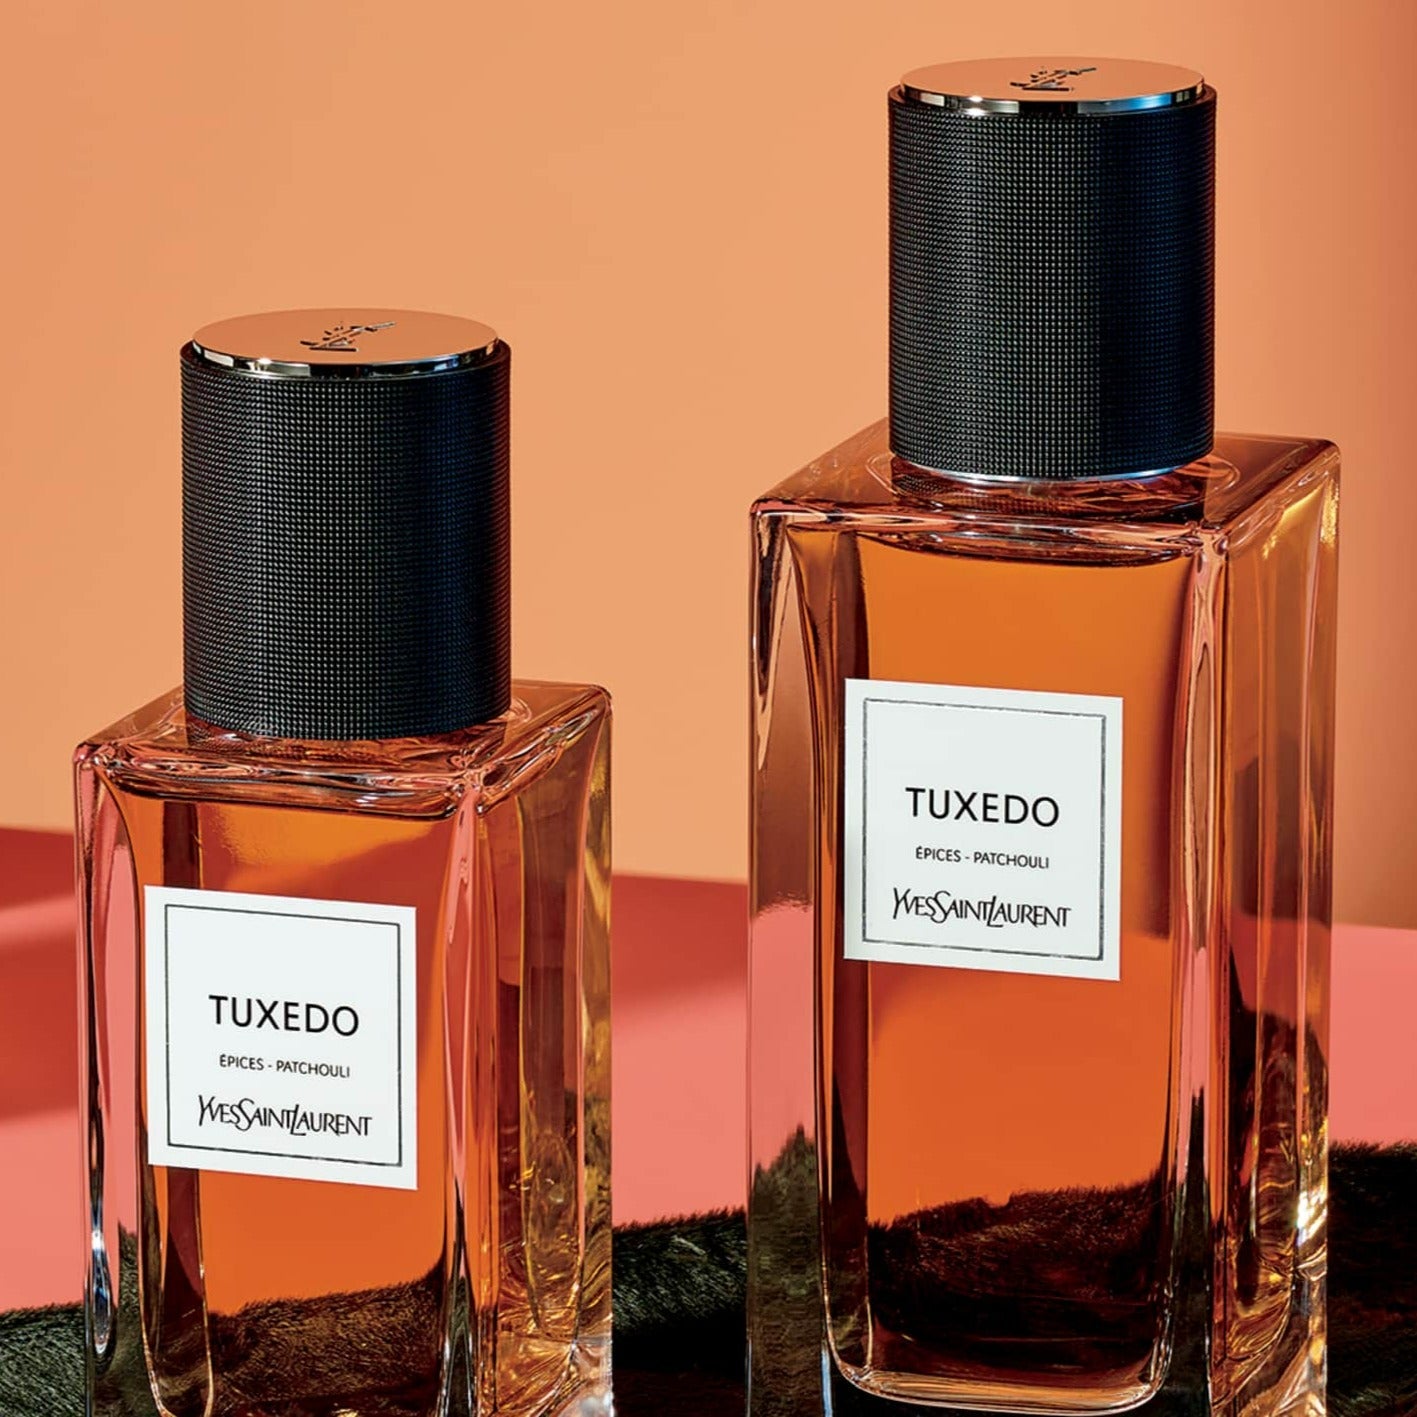 Yves Saint Laurent Le Vestiaire Des Tuxedo EDP | My Perfume Shop Australia